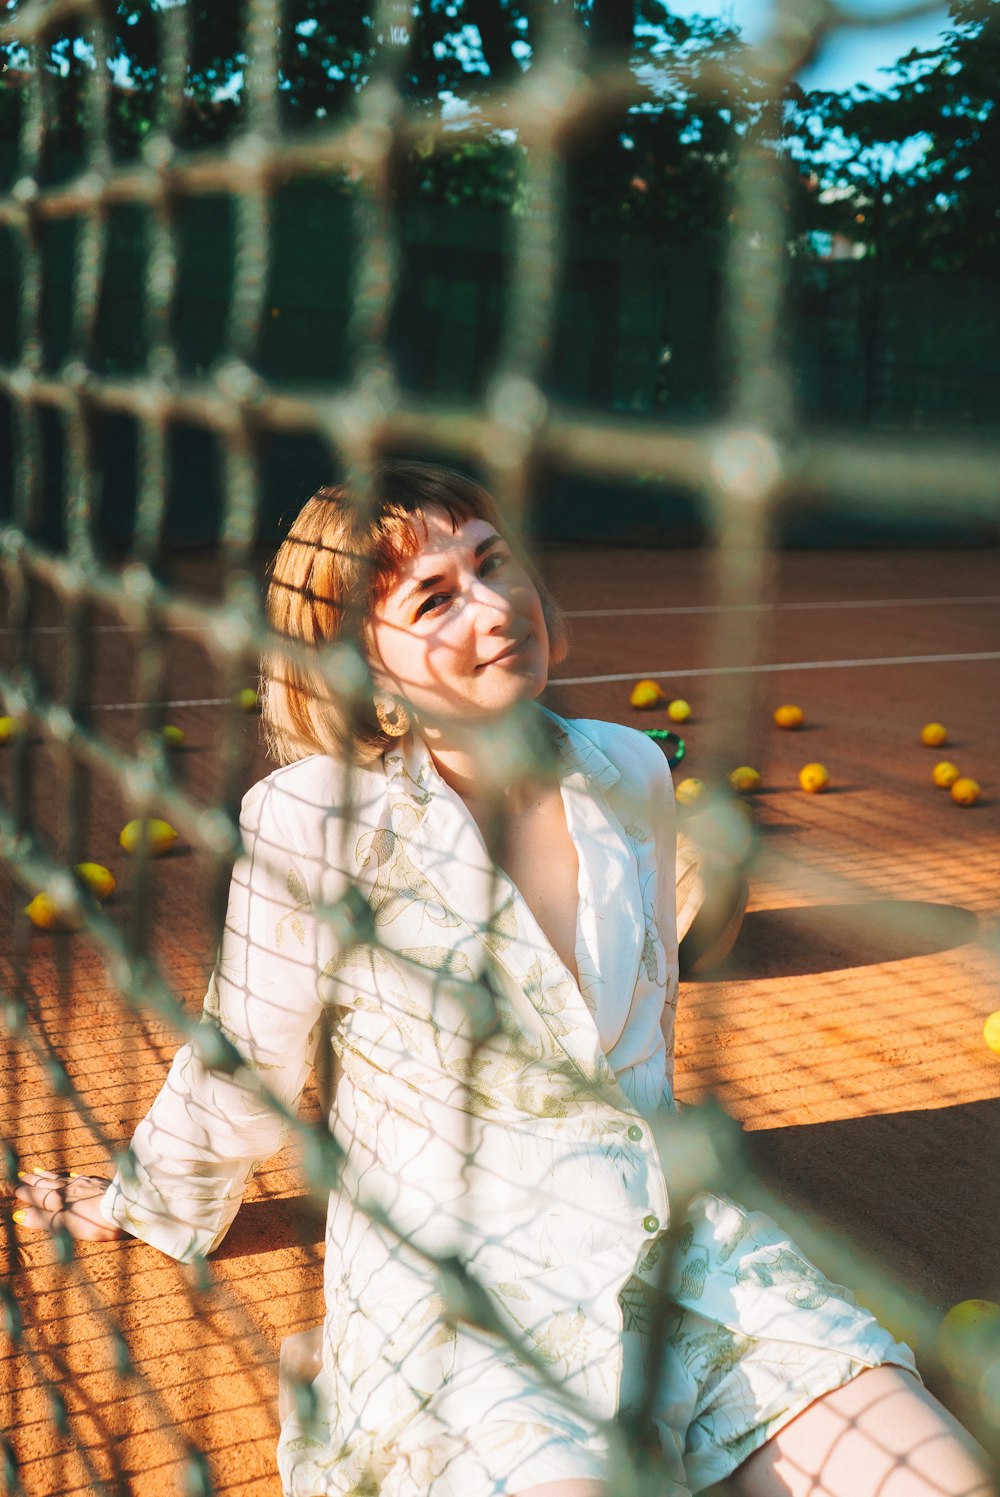 Eine Frau sitzt auf einem Tennisplatz neben einem Netz